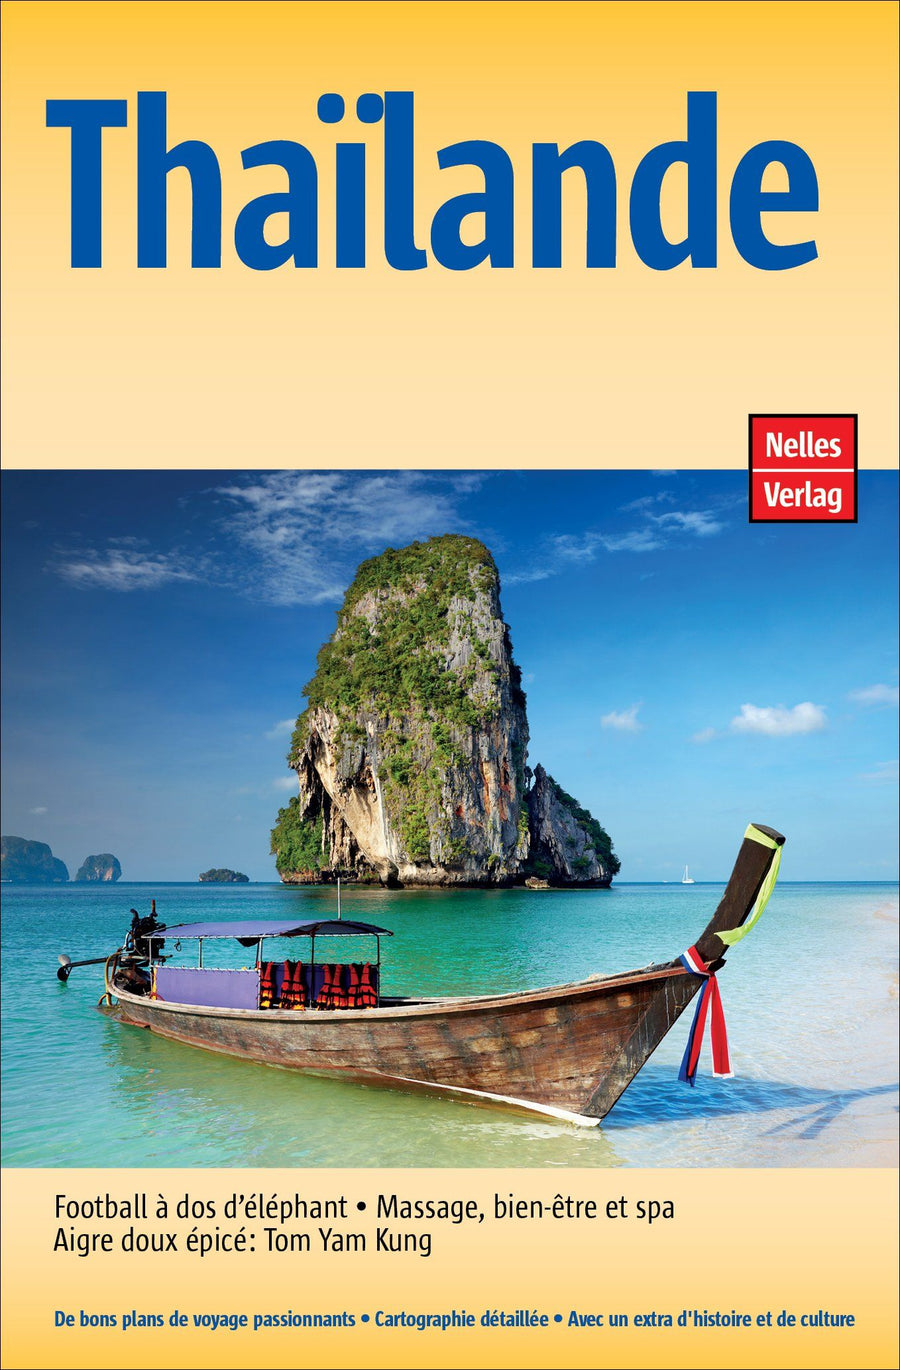 Guide de voyage - Thaïlande | Nelles Guide guide de voyage Nelles Guide 